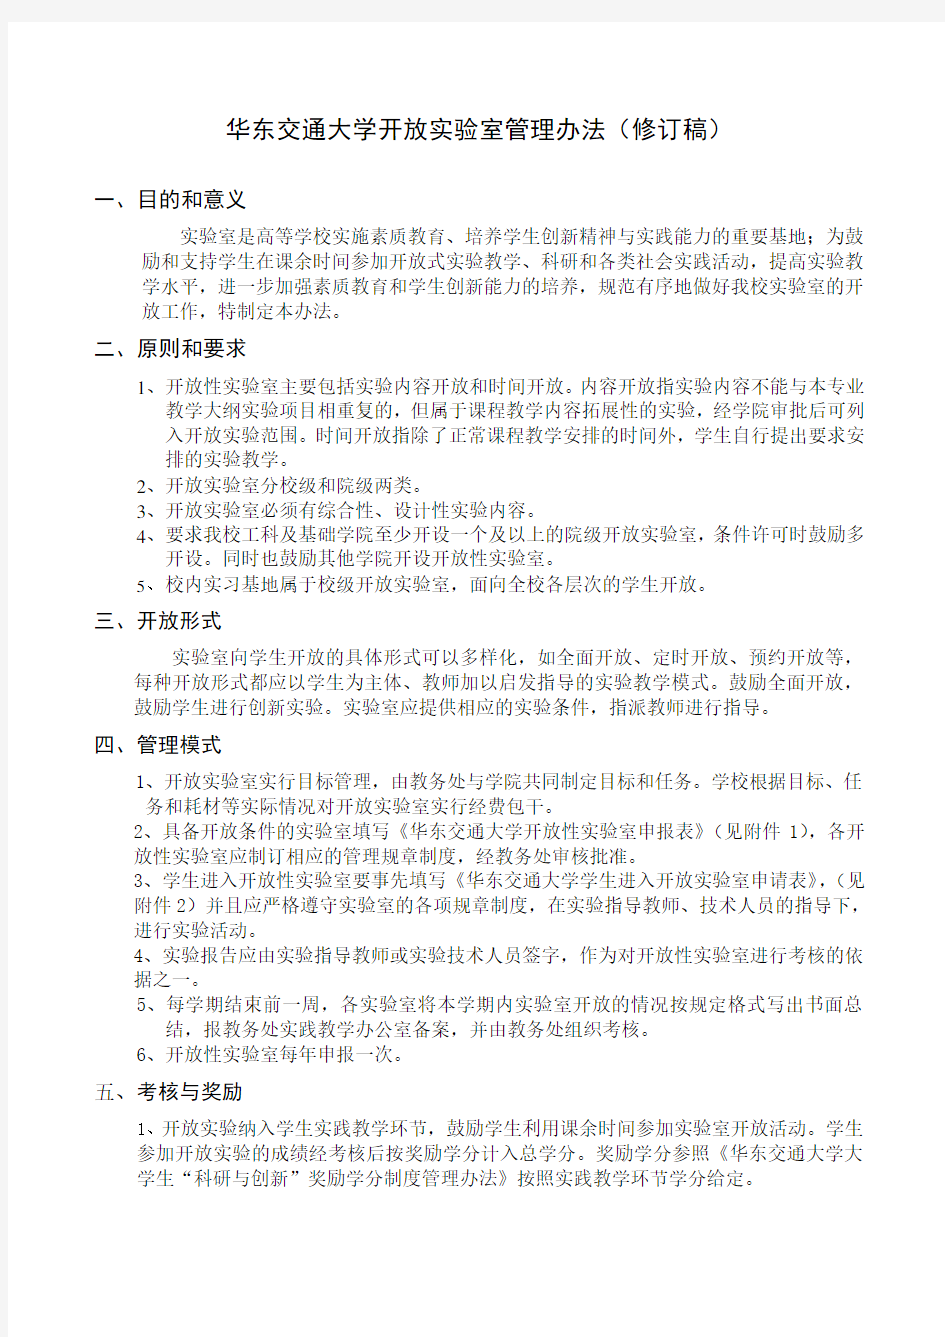 华东交通大学开放实验室管理办法(修订稿)